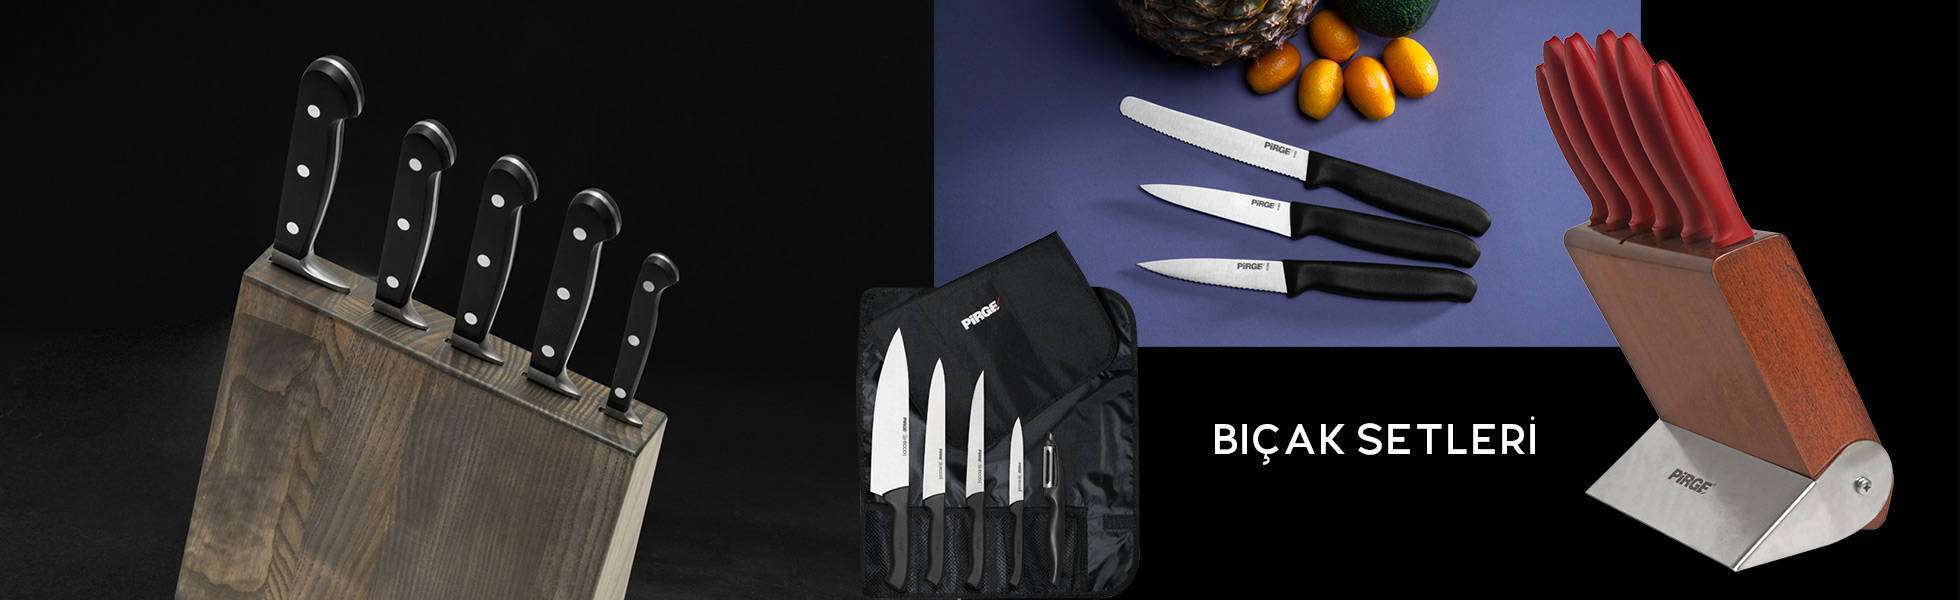 Pirge Bıçak- Best Knife Manufacturer in Turkey 2021